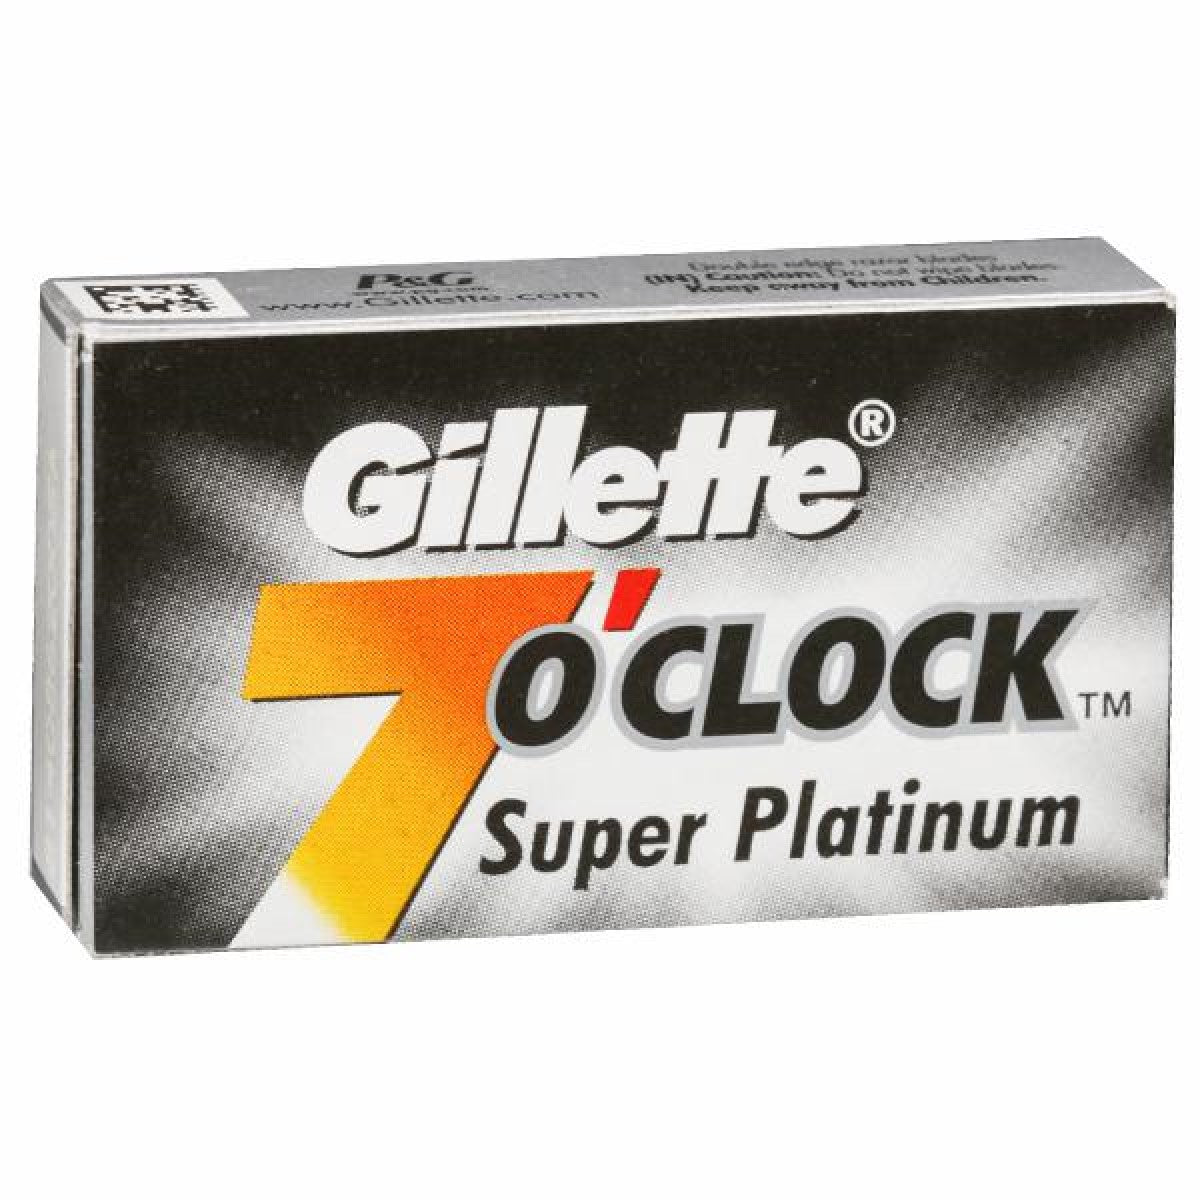 Primary Image of 7 O'Clock Super Platinum Razor Blades